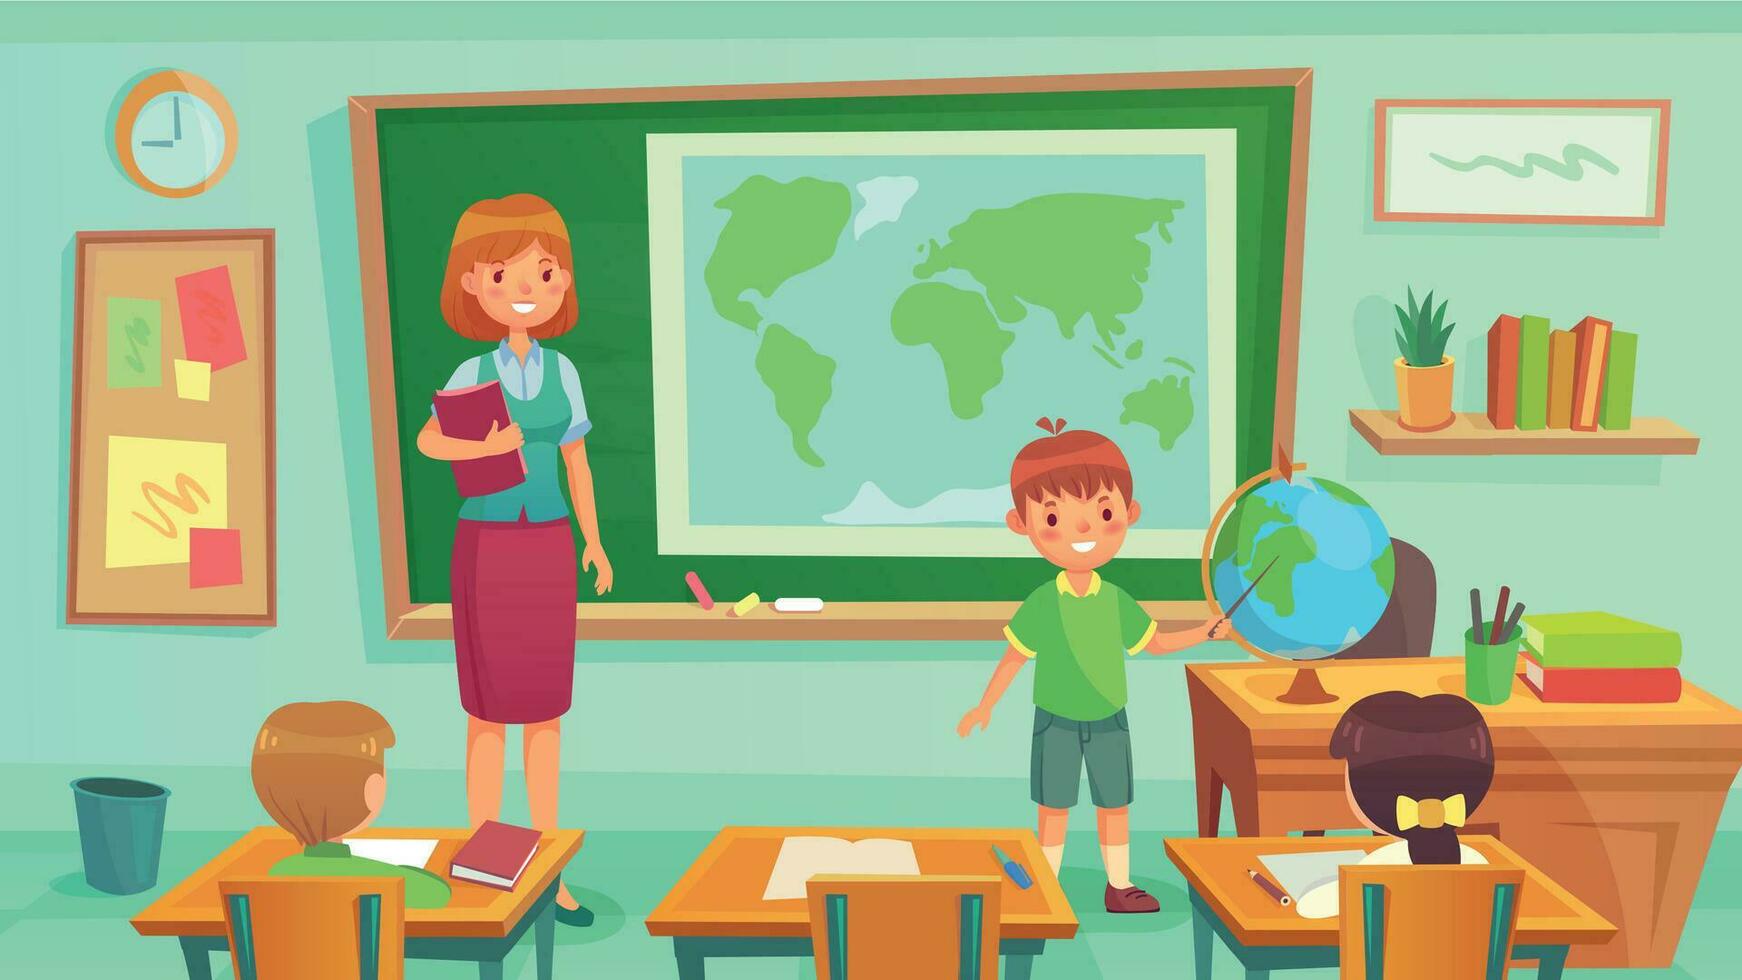 geografi klass, lärare och elever i rum. skol som visar Land på klot. kvinna undervisning geografi lektion vektor